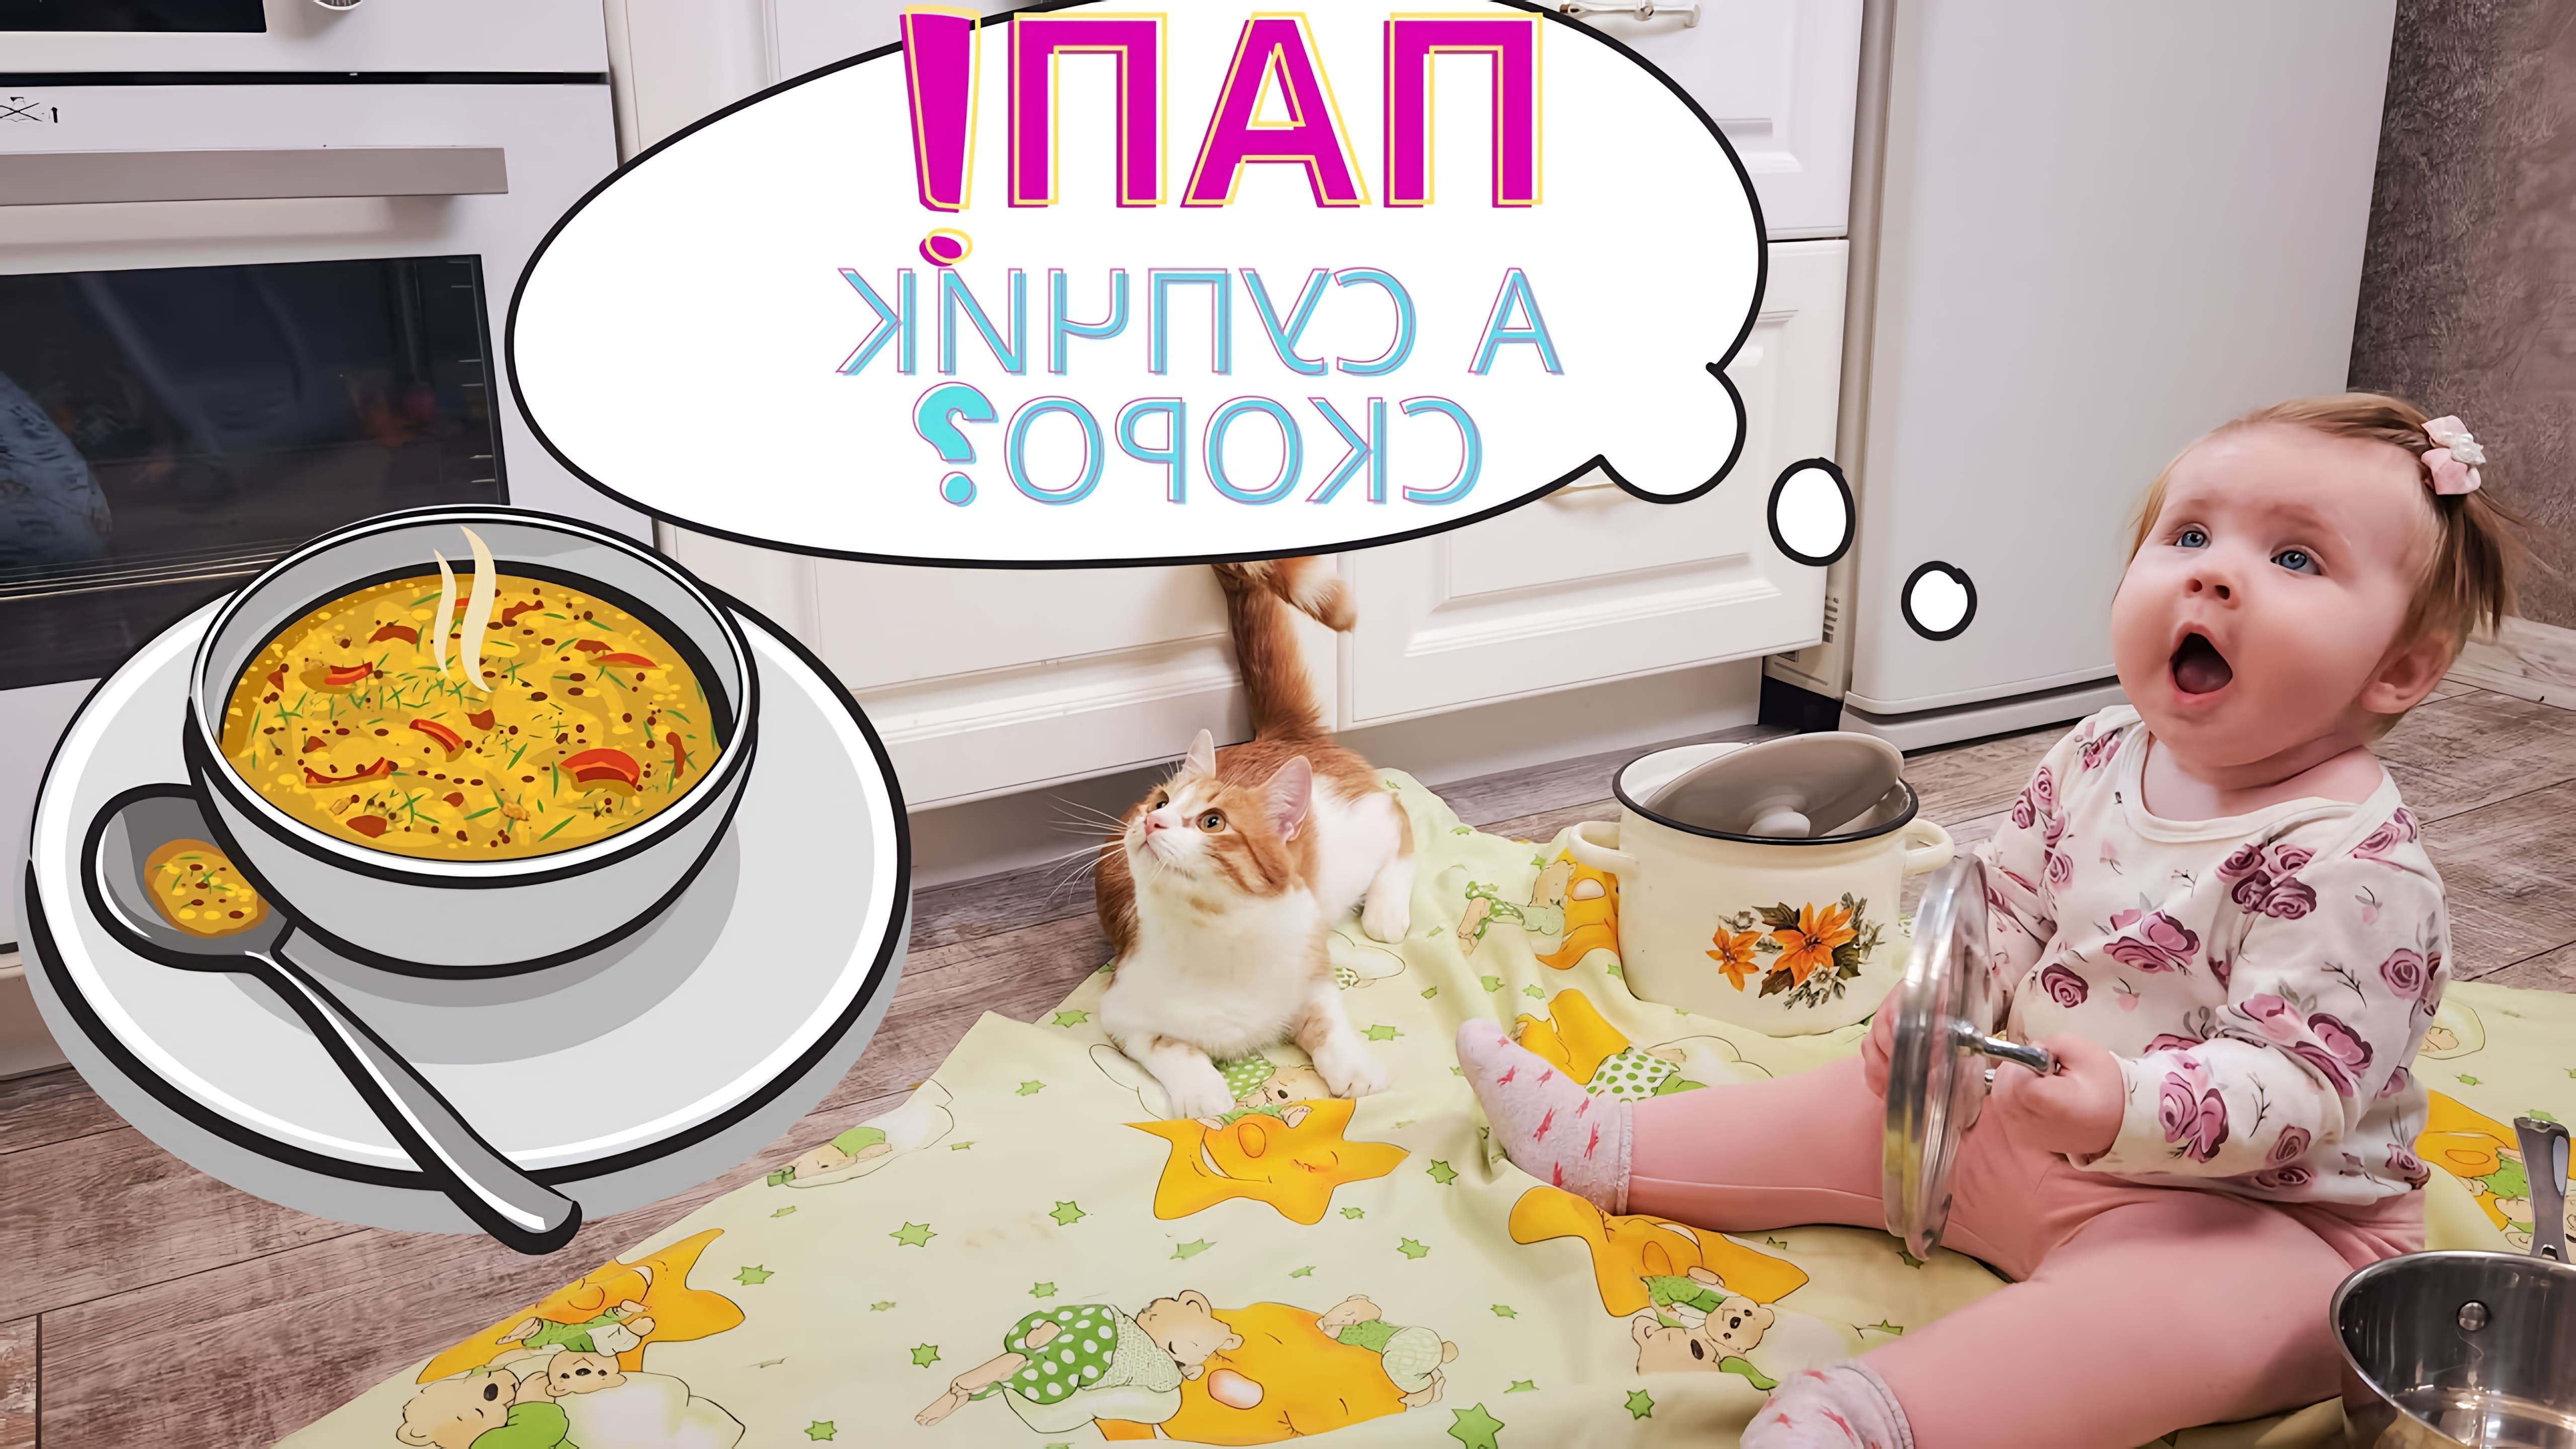 В этом видео демонстрируется процесс приготовления супа с фрикадельками для ребенка в возрасте от 9 до 12 месяцев